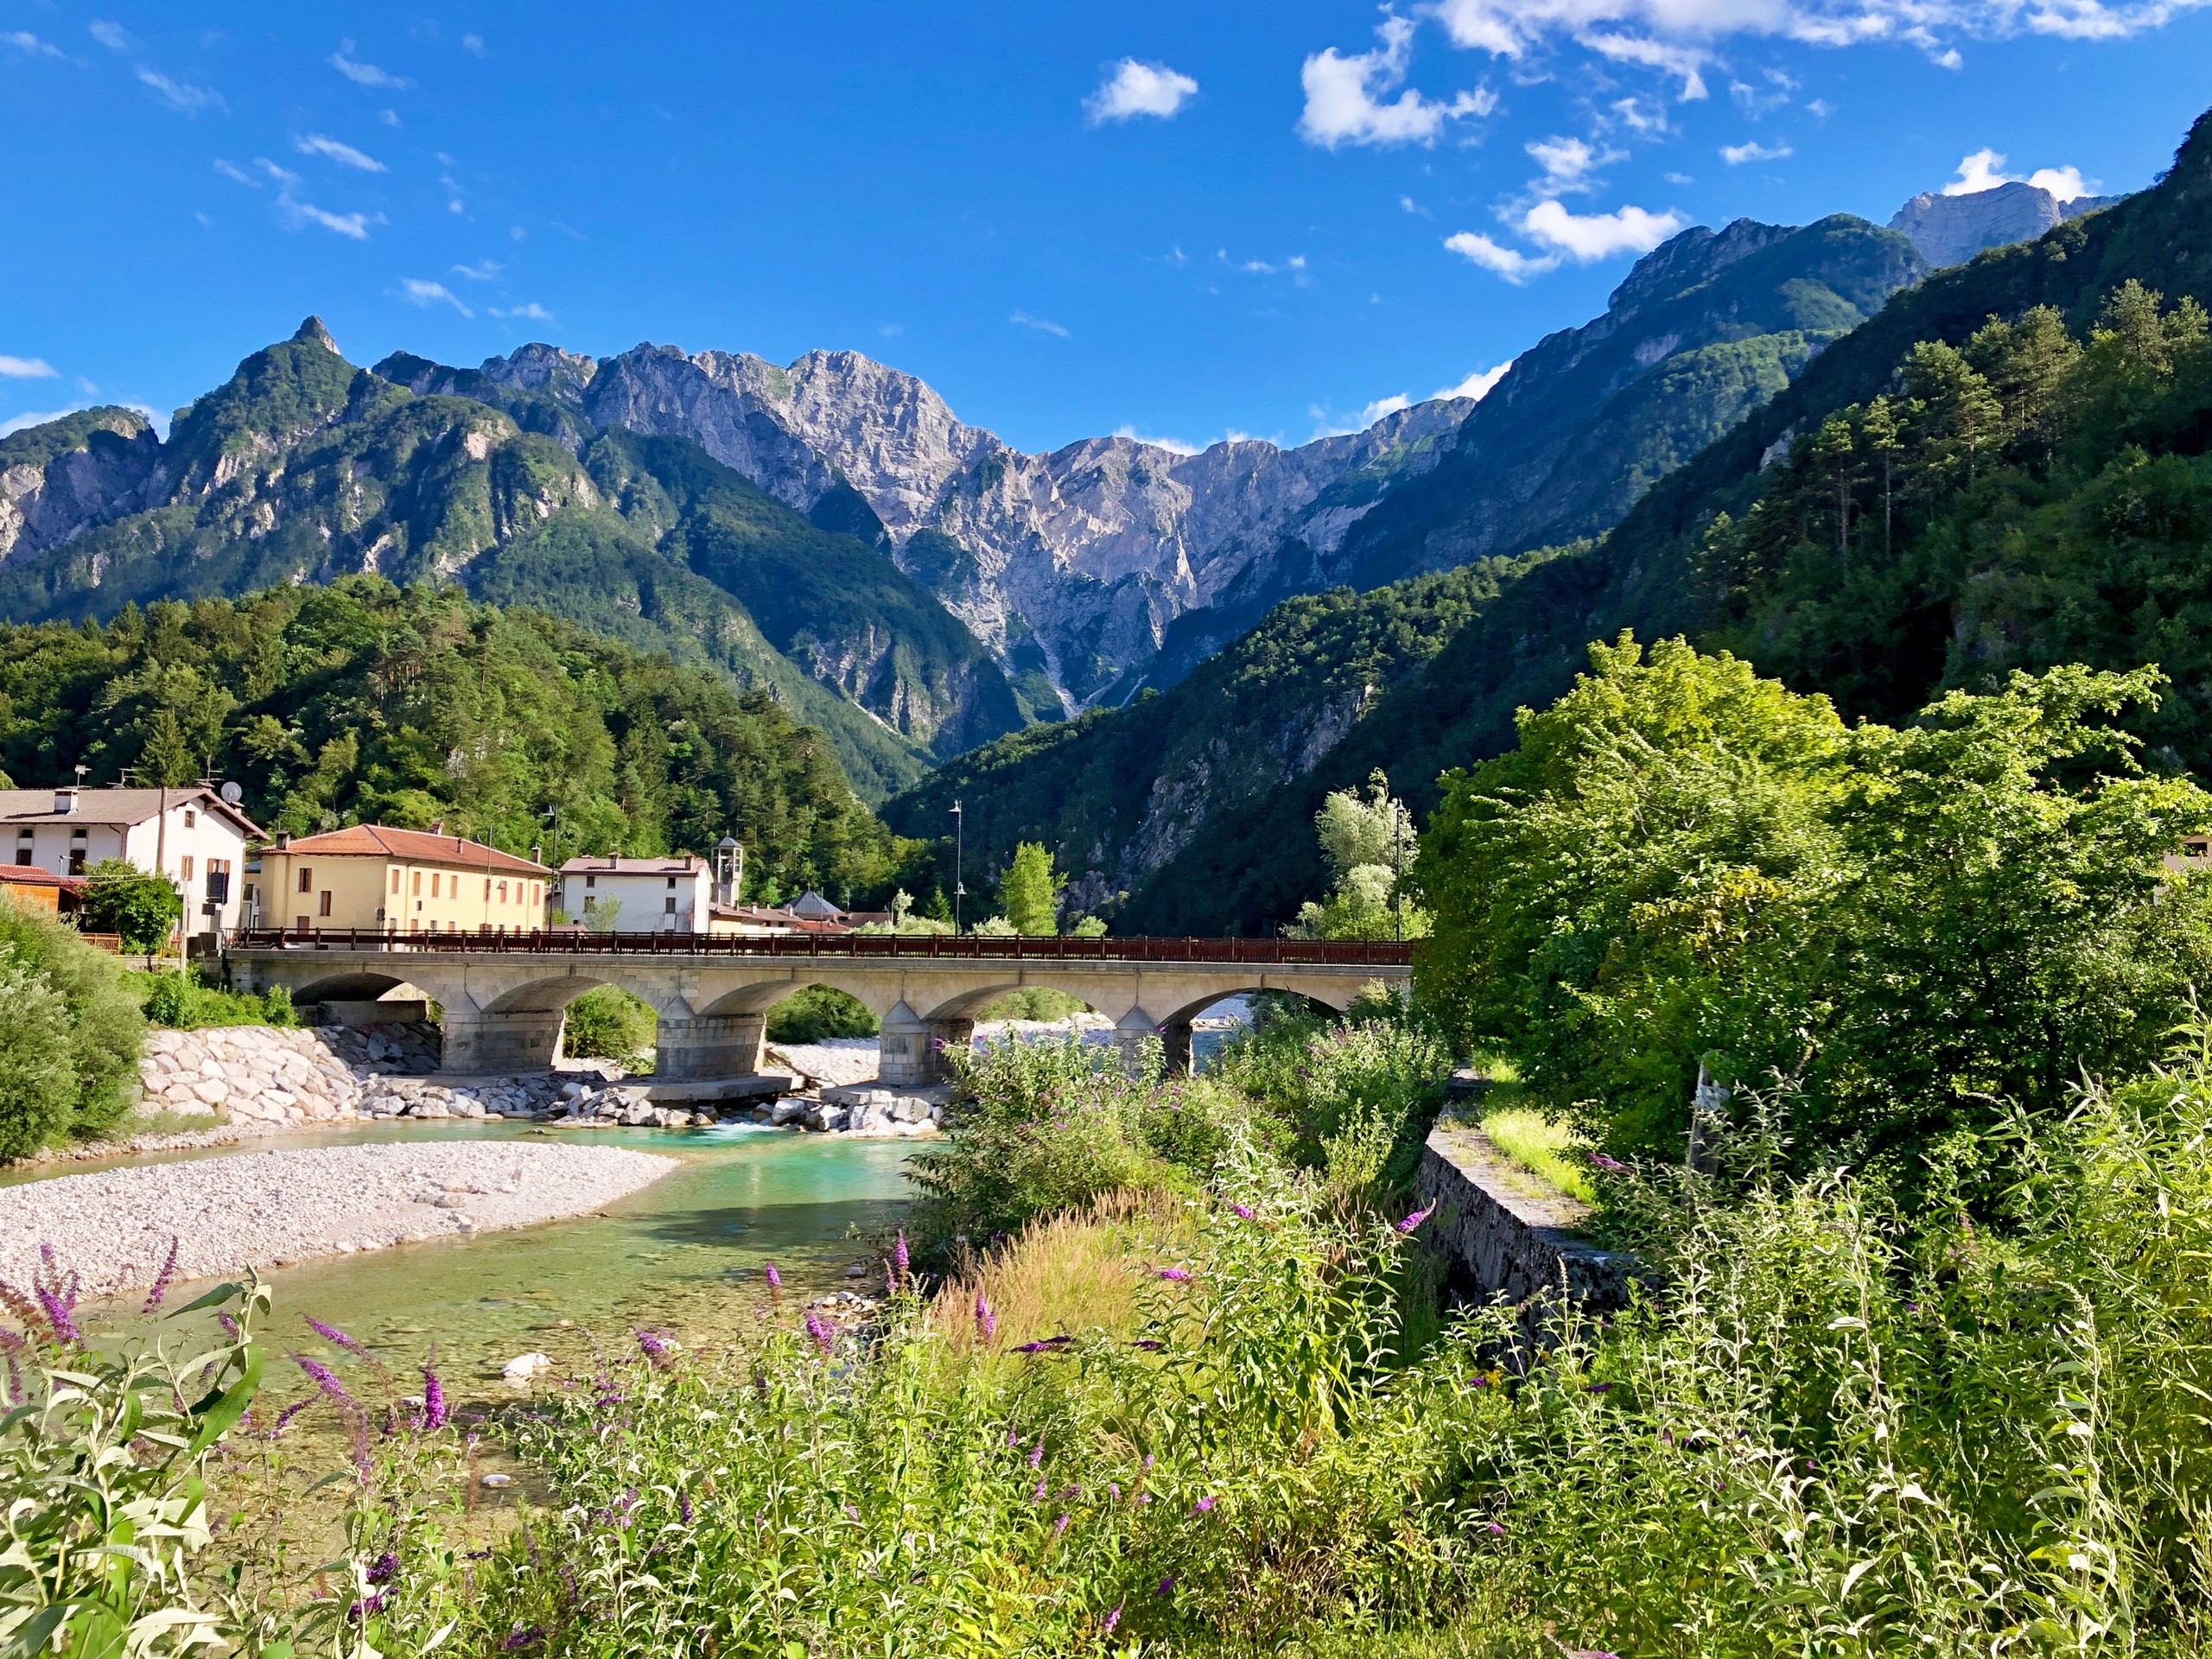 Small bridge over the river along the Alpe Adria trail